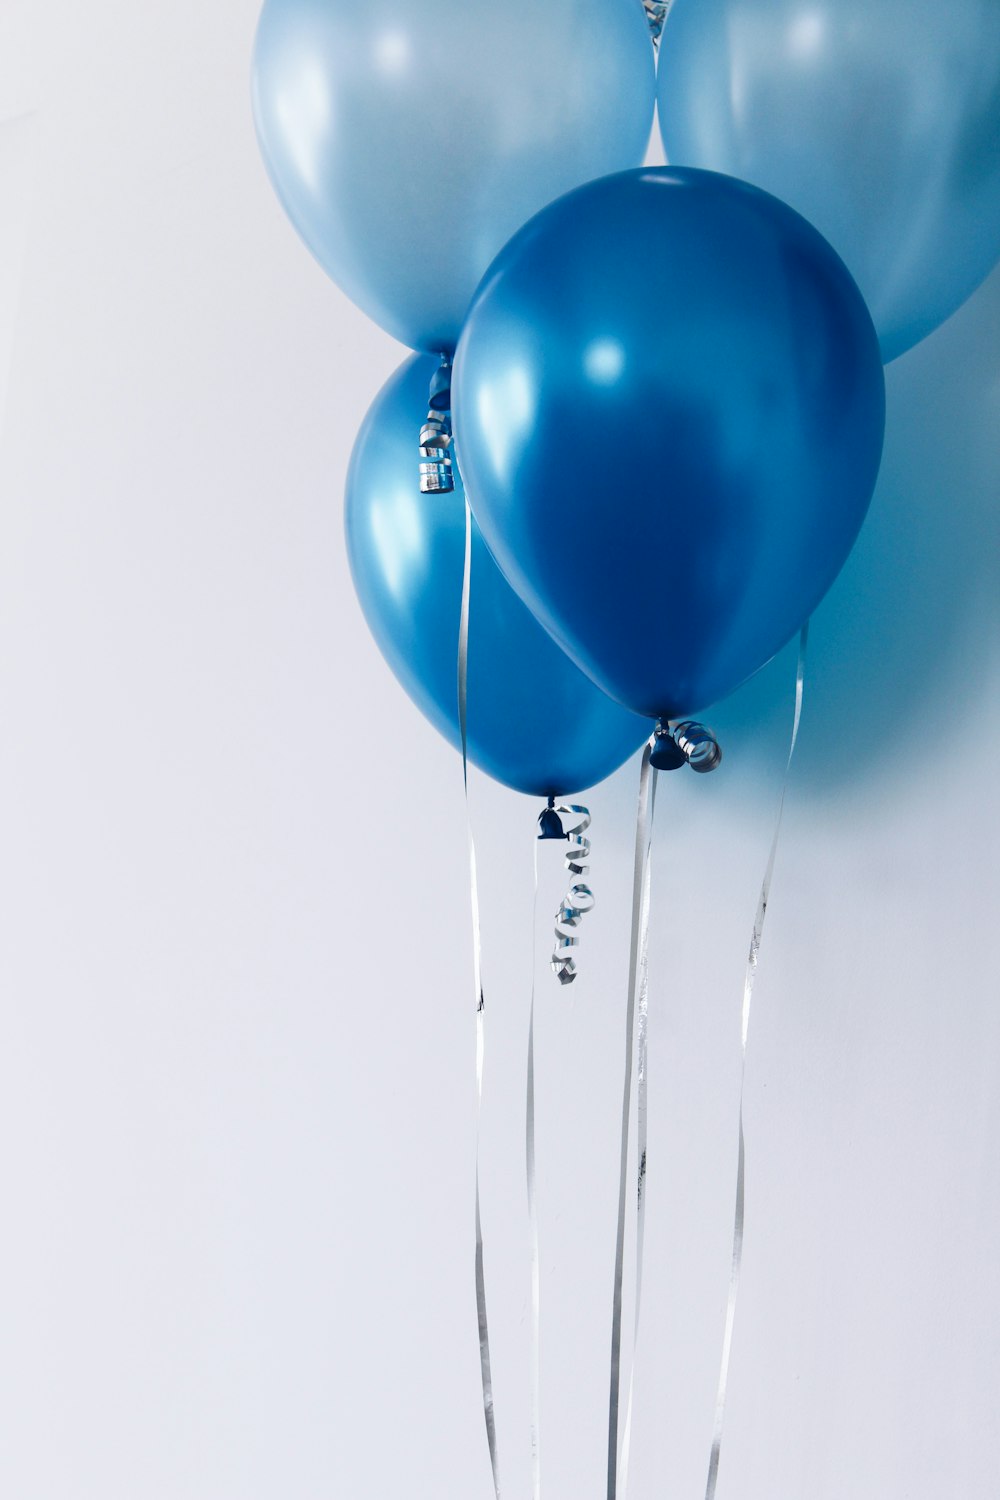 Quattro palloncini blu vicino al muro bianco